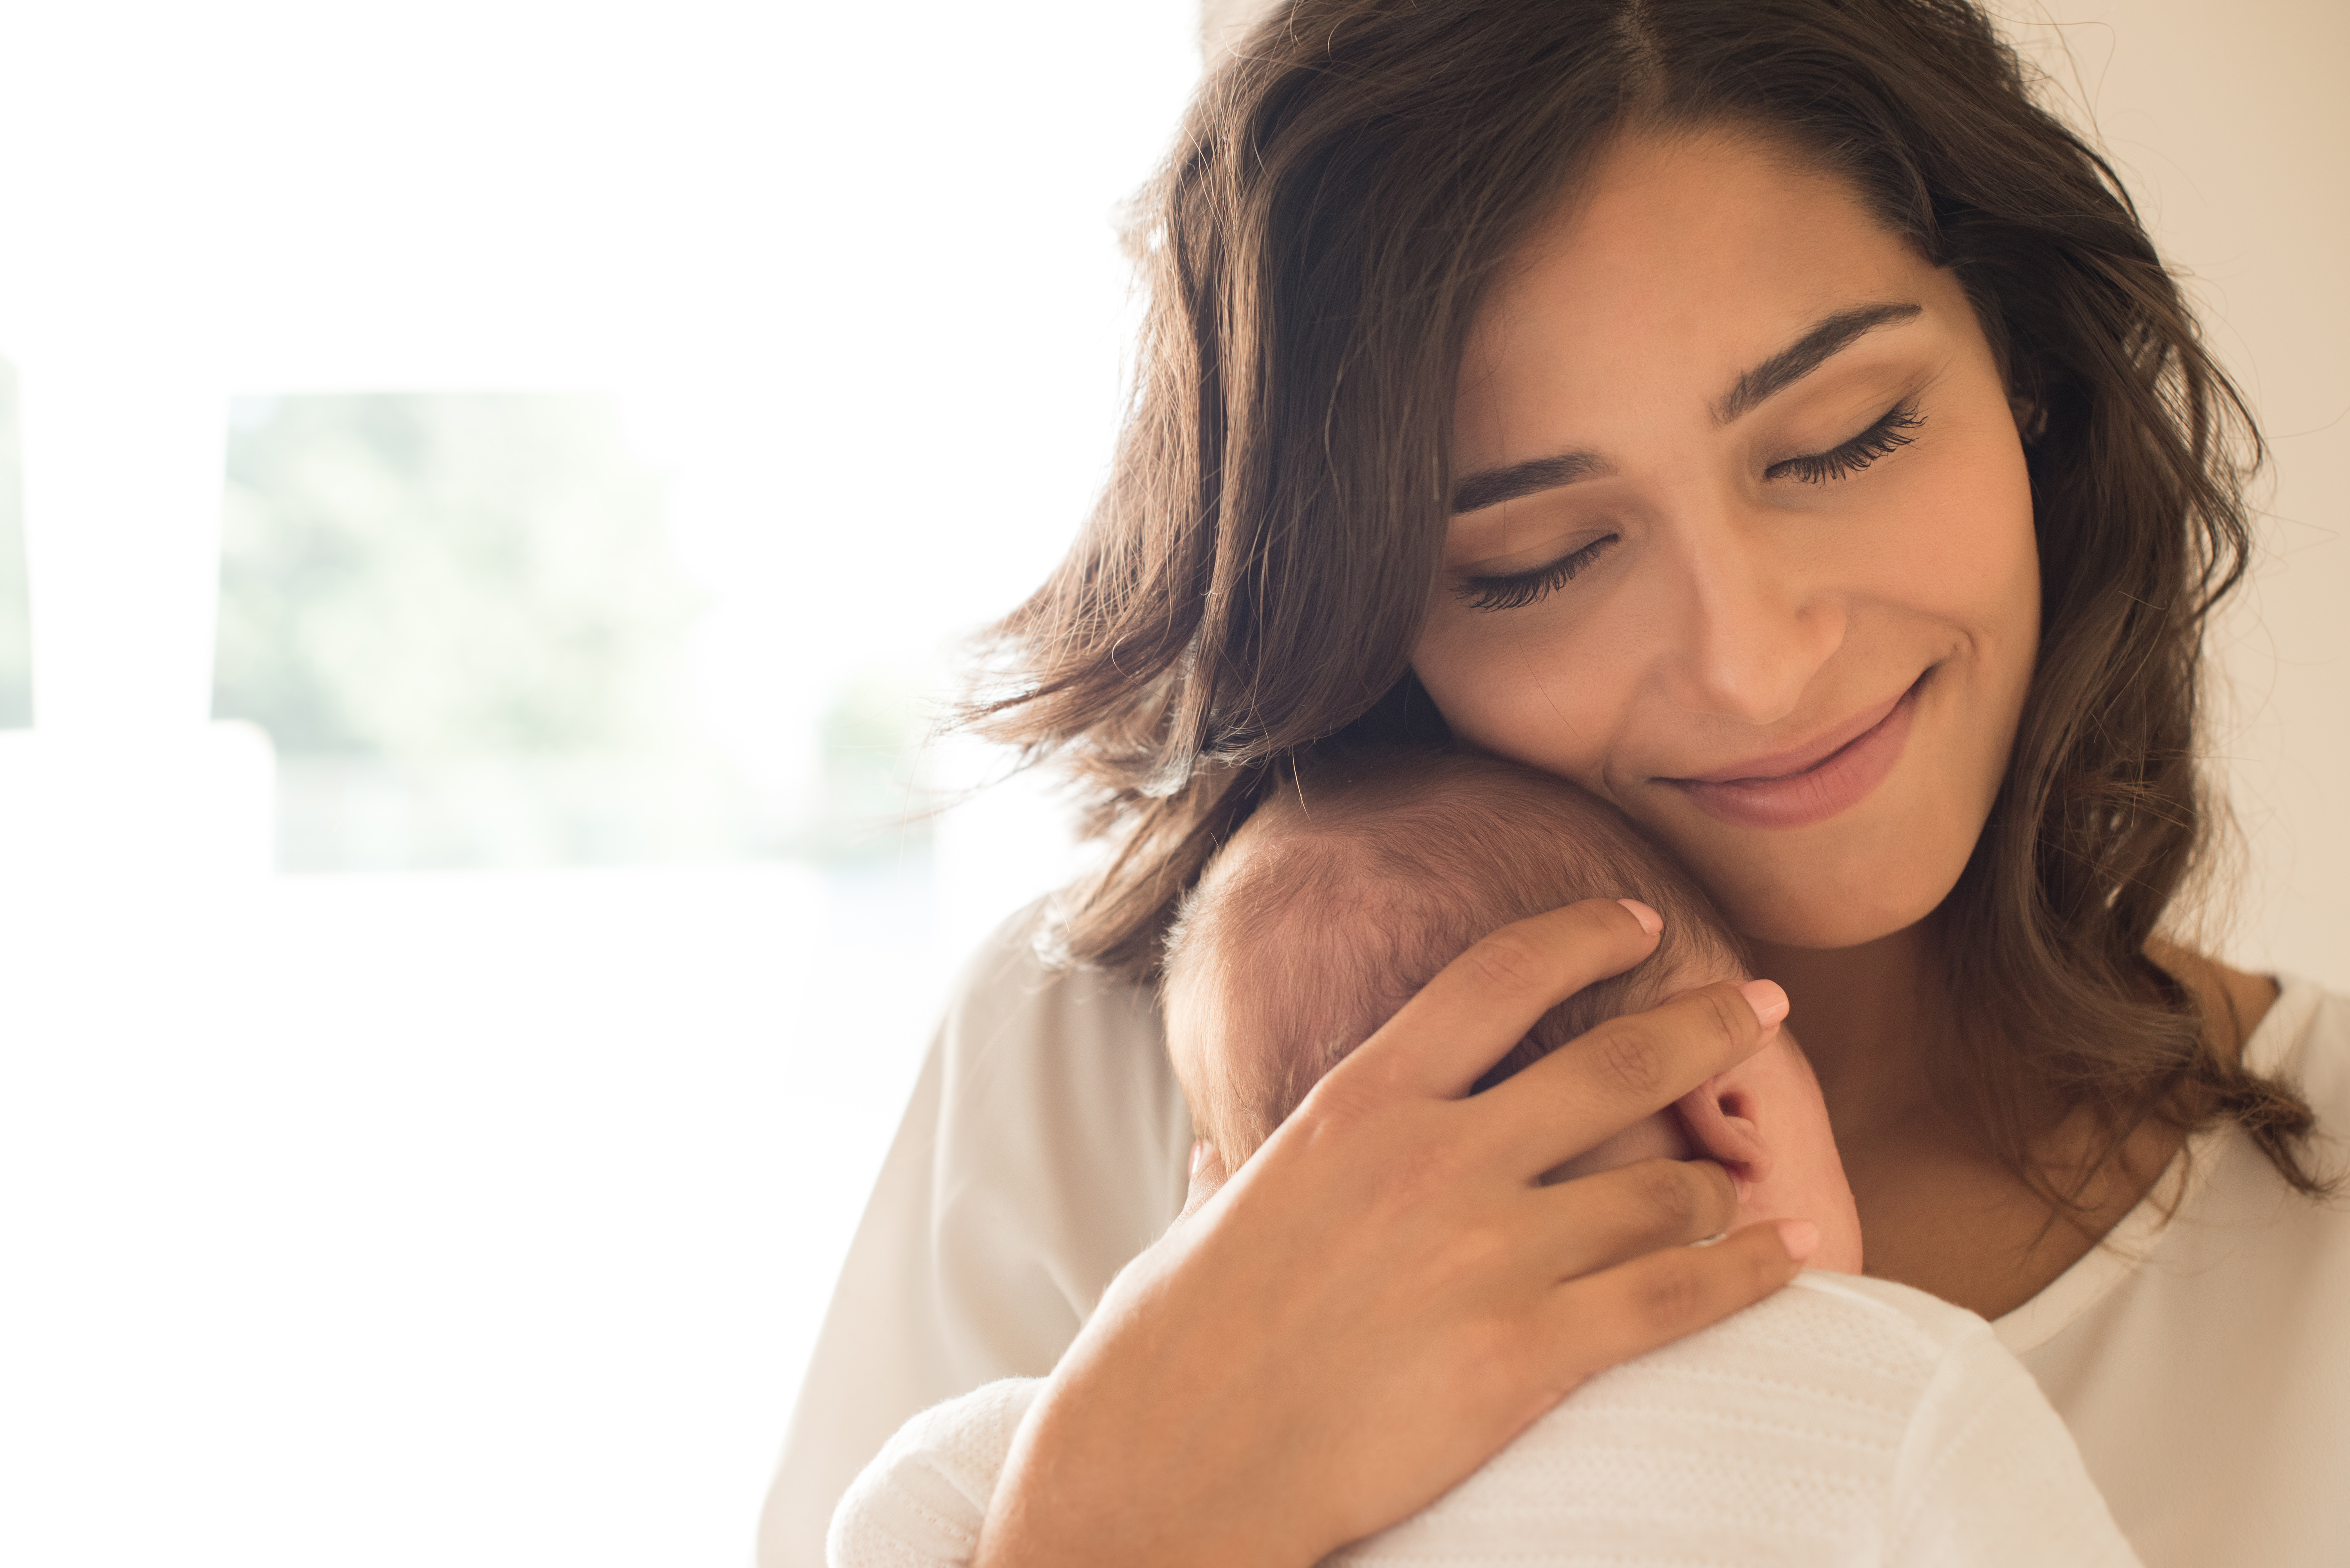 A woman holding a newborn baby | Source: Shutterstock